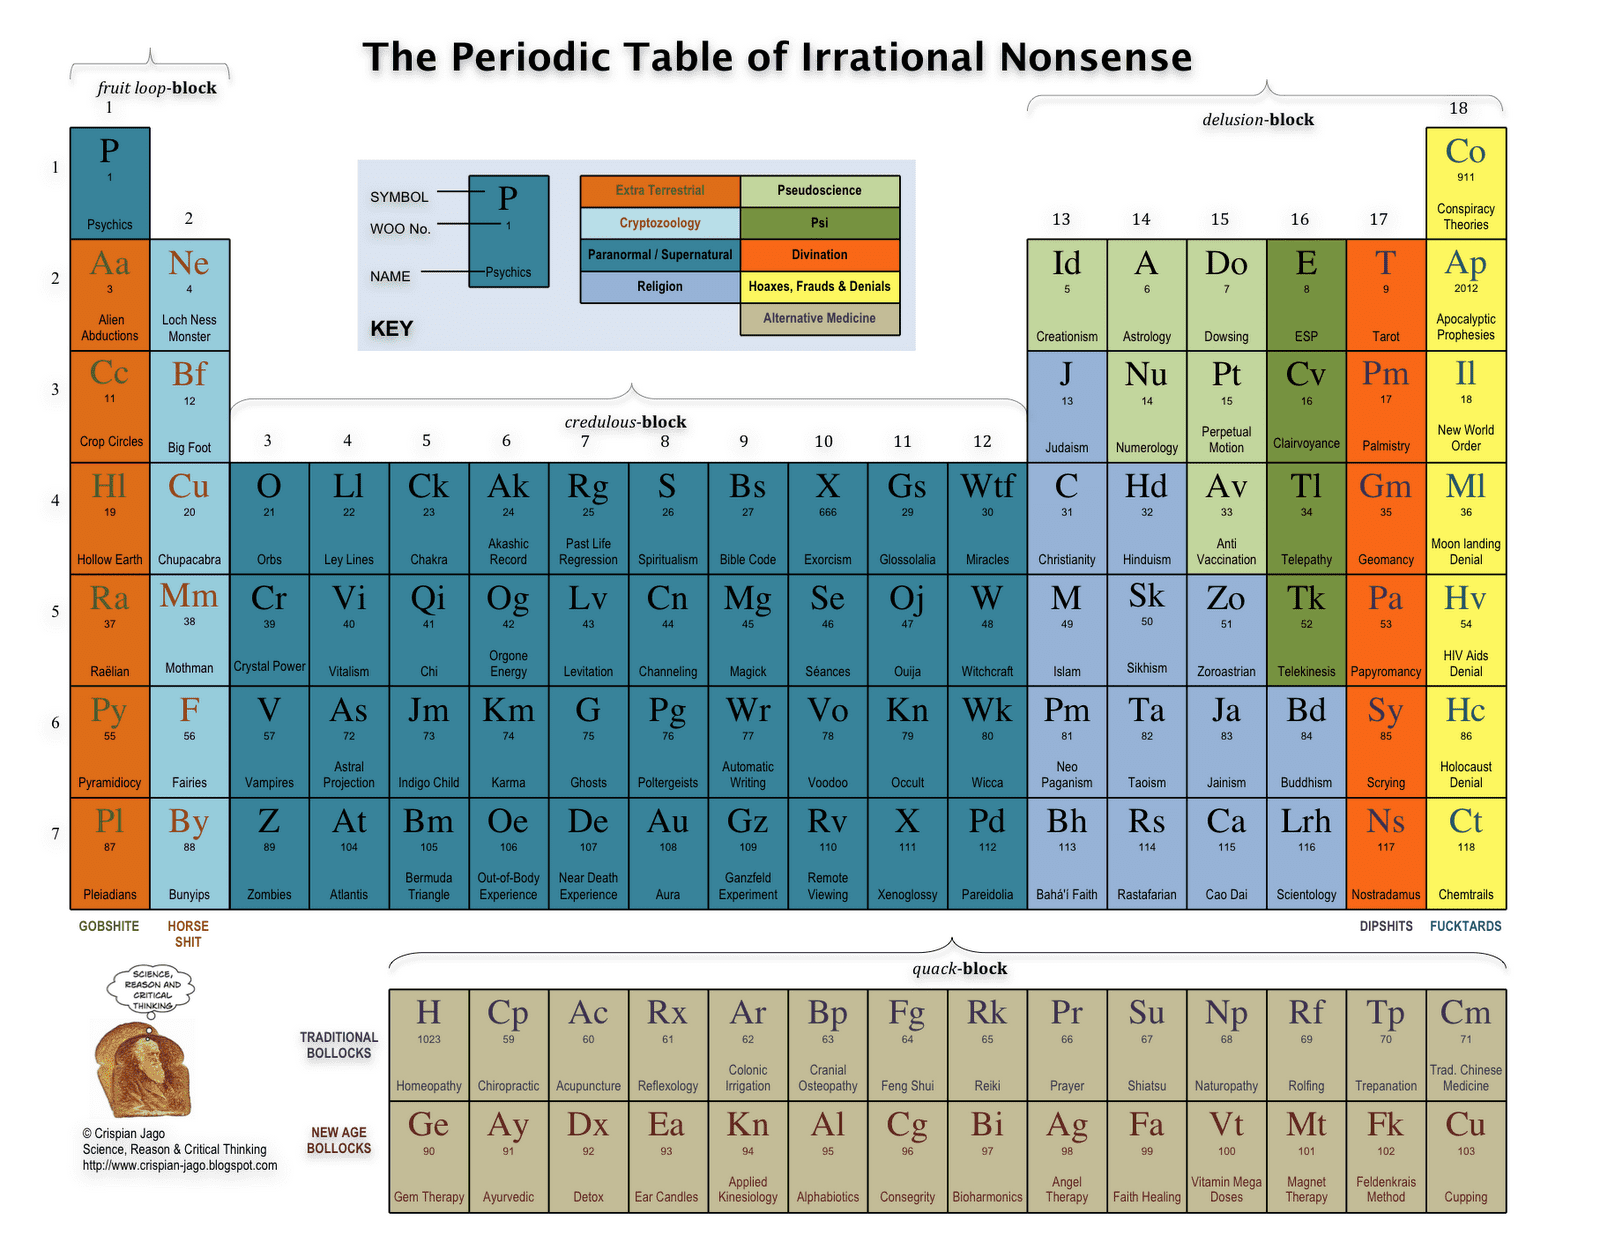 La tabla periódica de las tonterías irracionales.